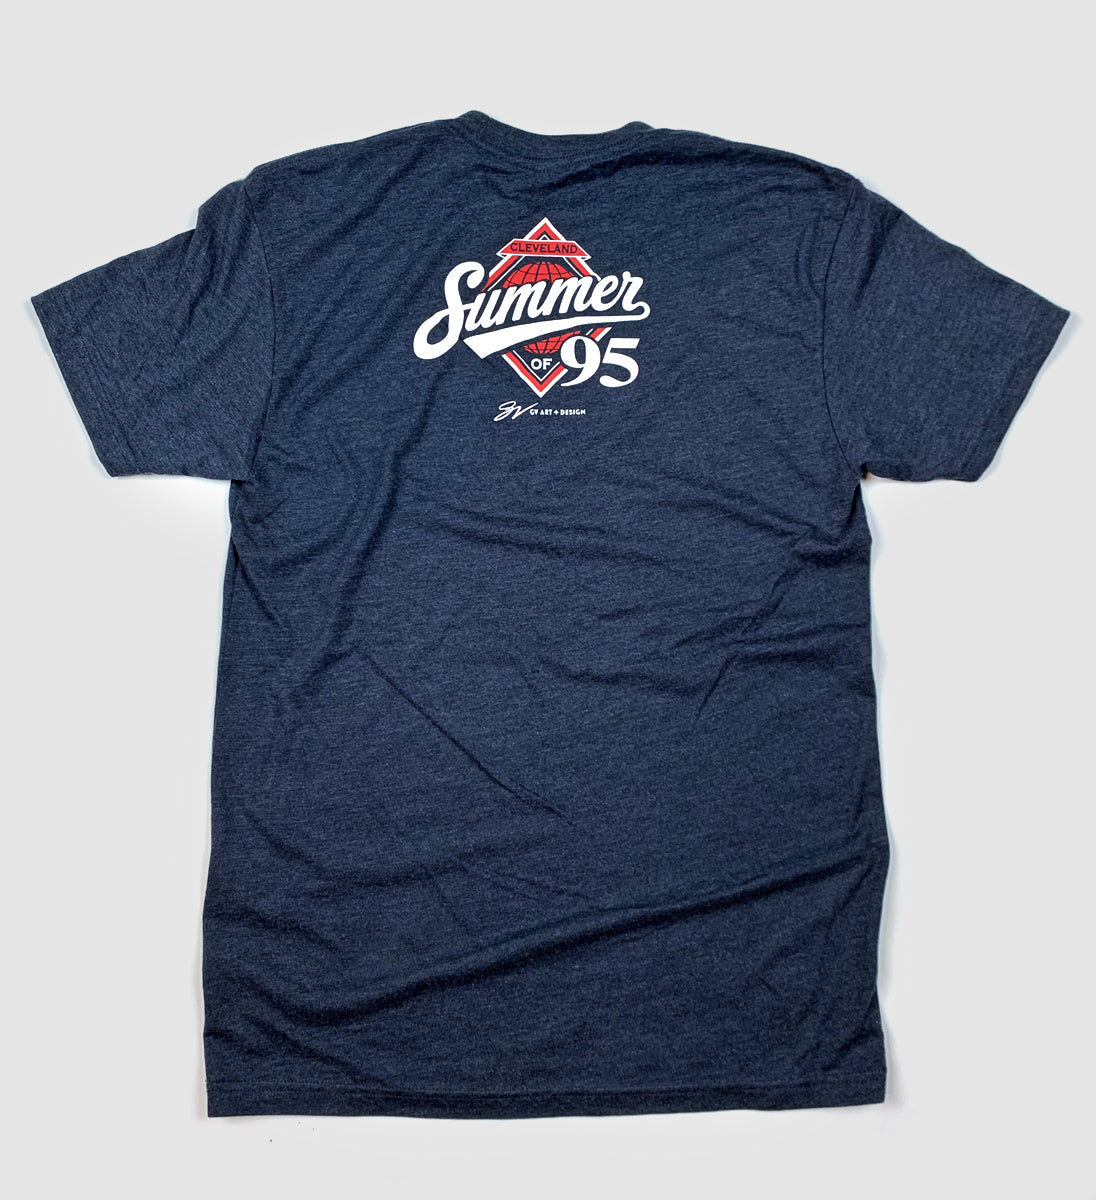 Cleveland Summer of '95 T shirt